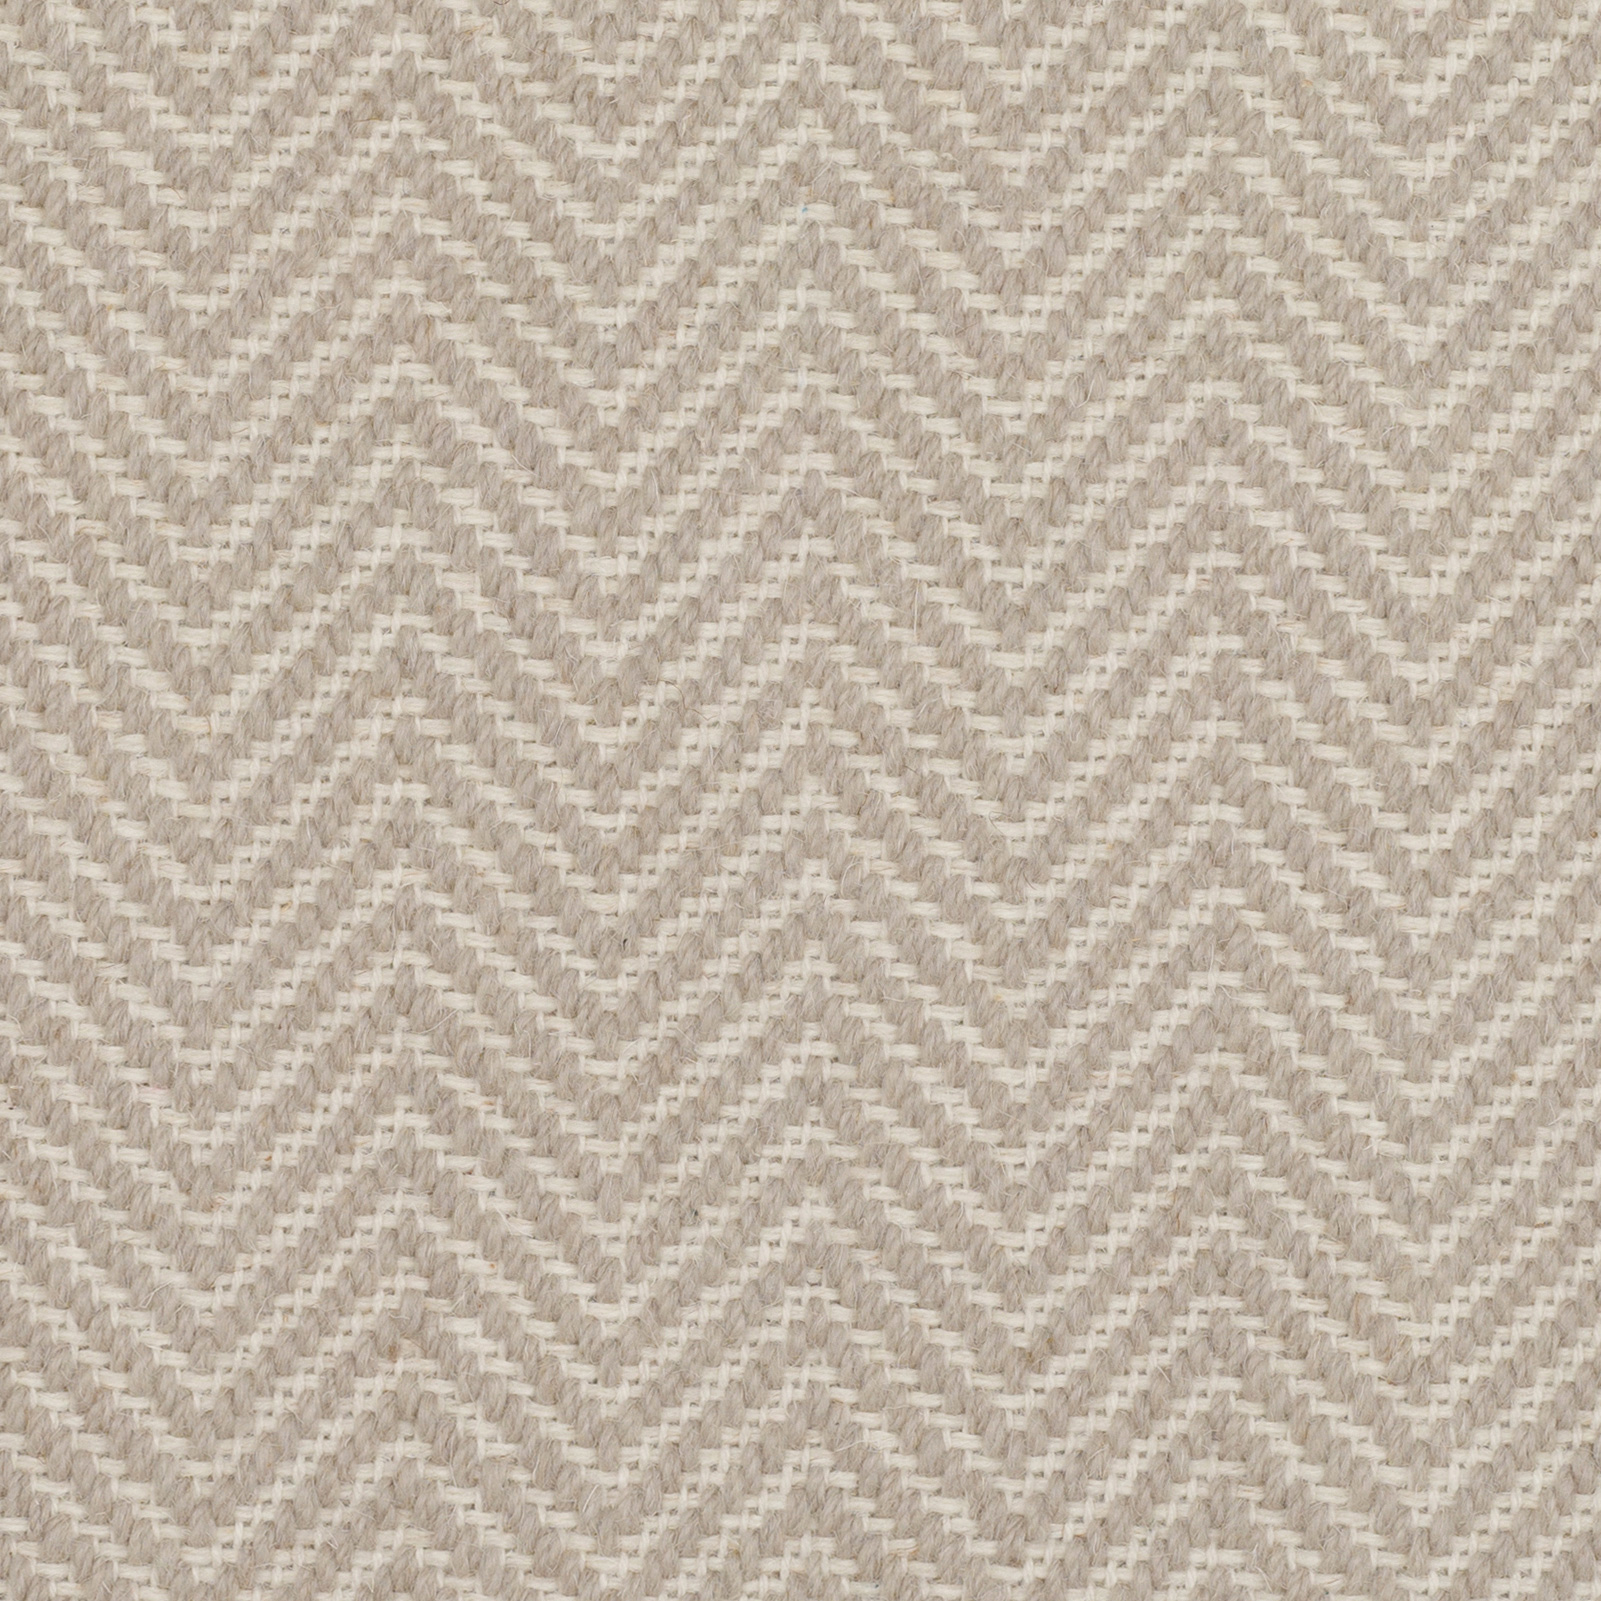 Sorrento: Tortora - 100% Wool Carpet